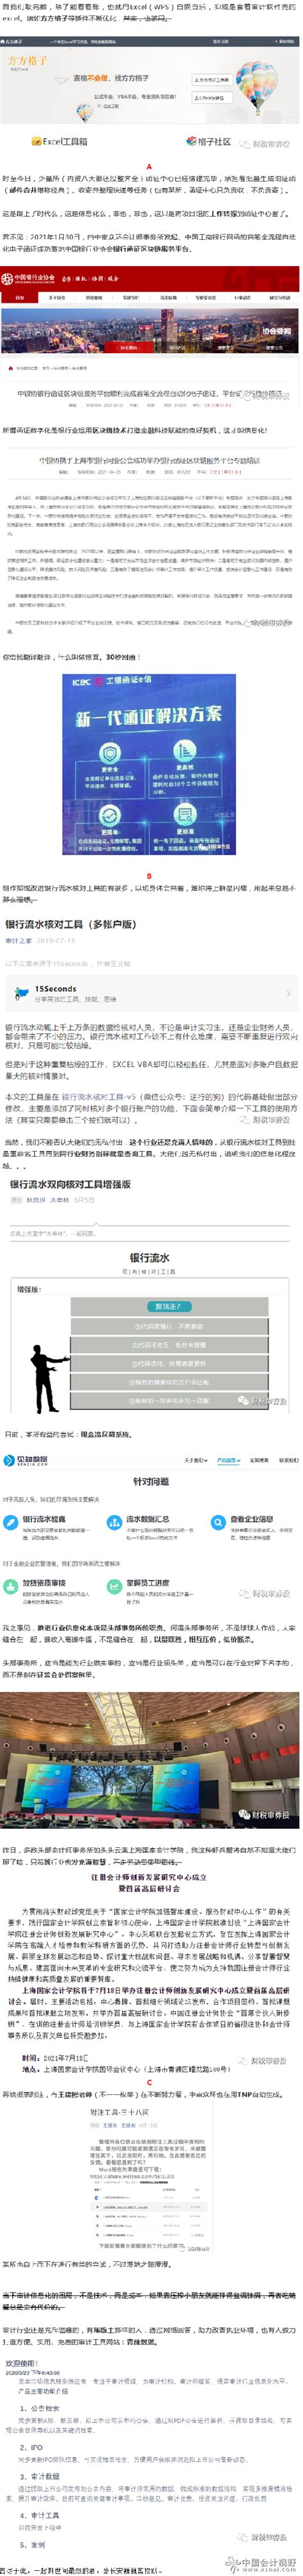 审计信息化与函证中心_会计审计第一门户-中国会计视野